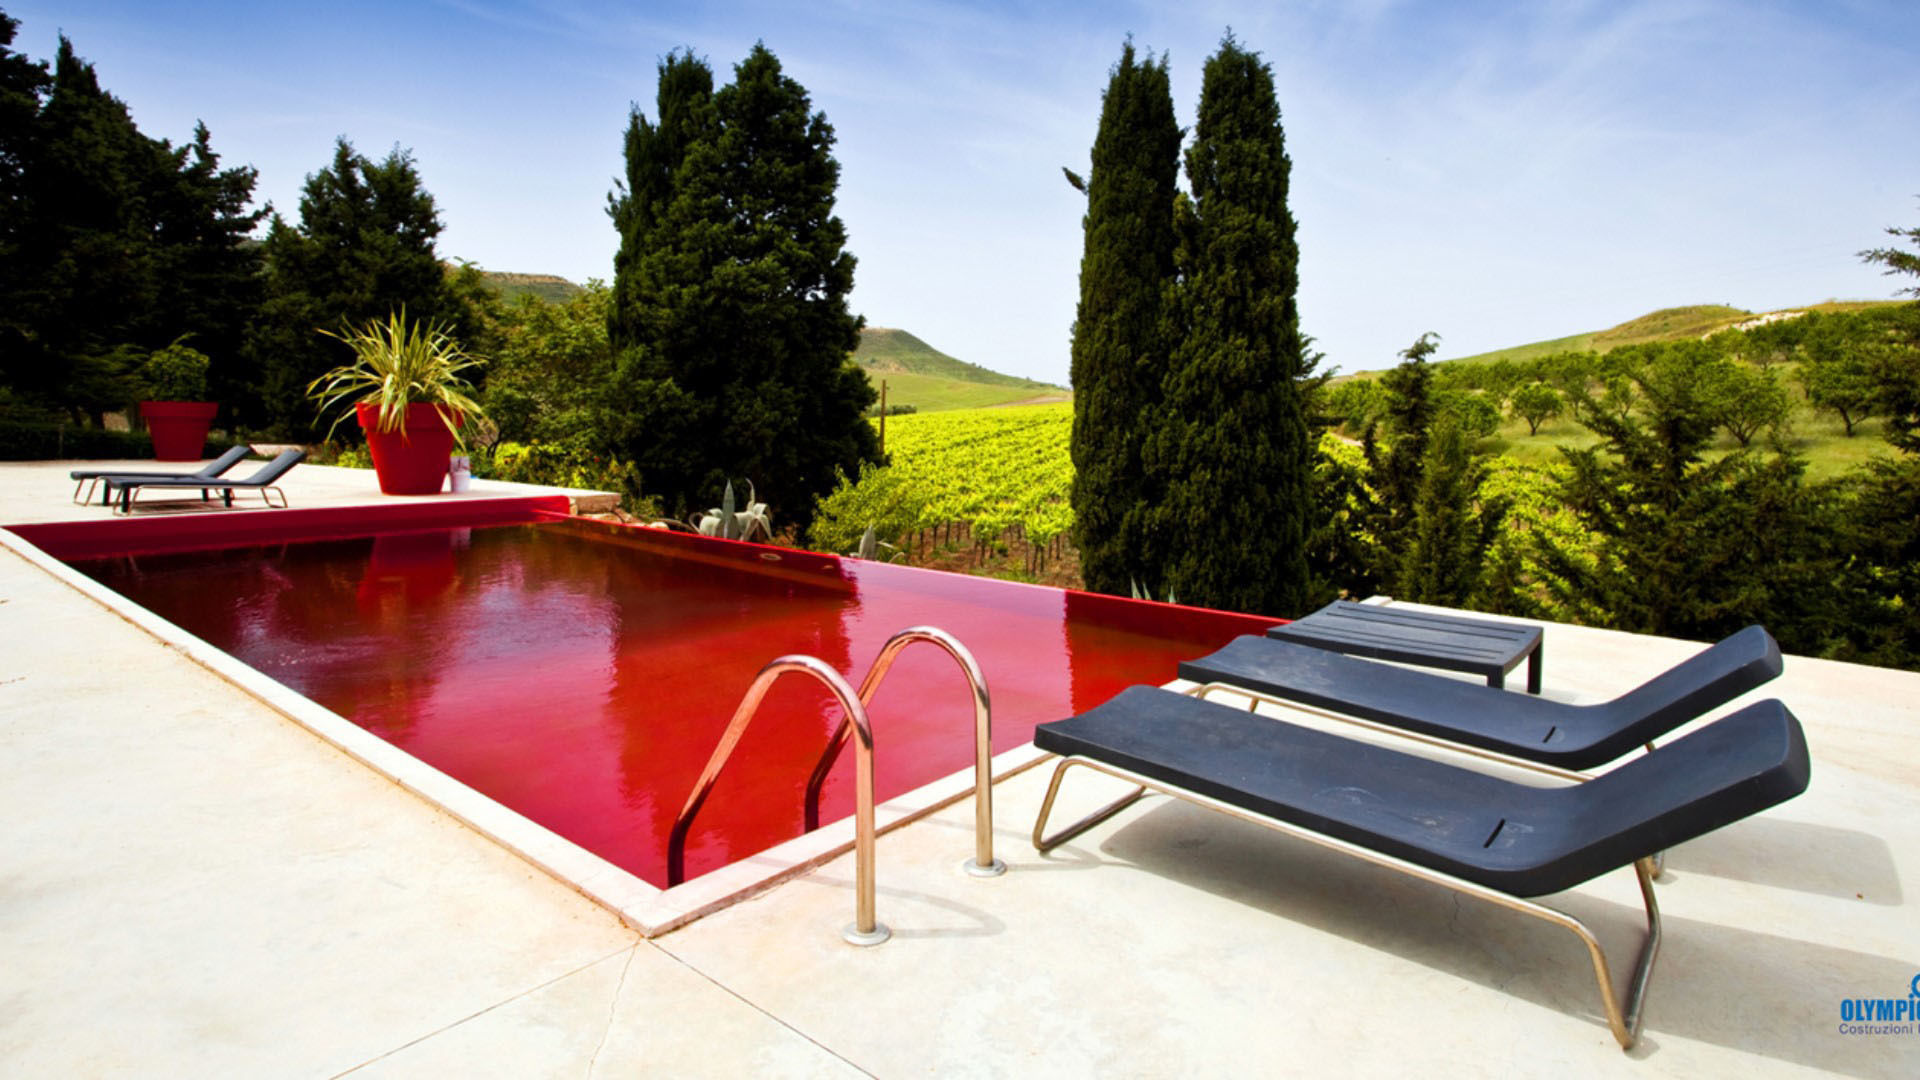 Realizzazione piscina pubblica per Hotel Farm Butera Olympic Italia Costruzioni Piscine SPA - di Gabriele Lodato Piscina in stile mediterraneo